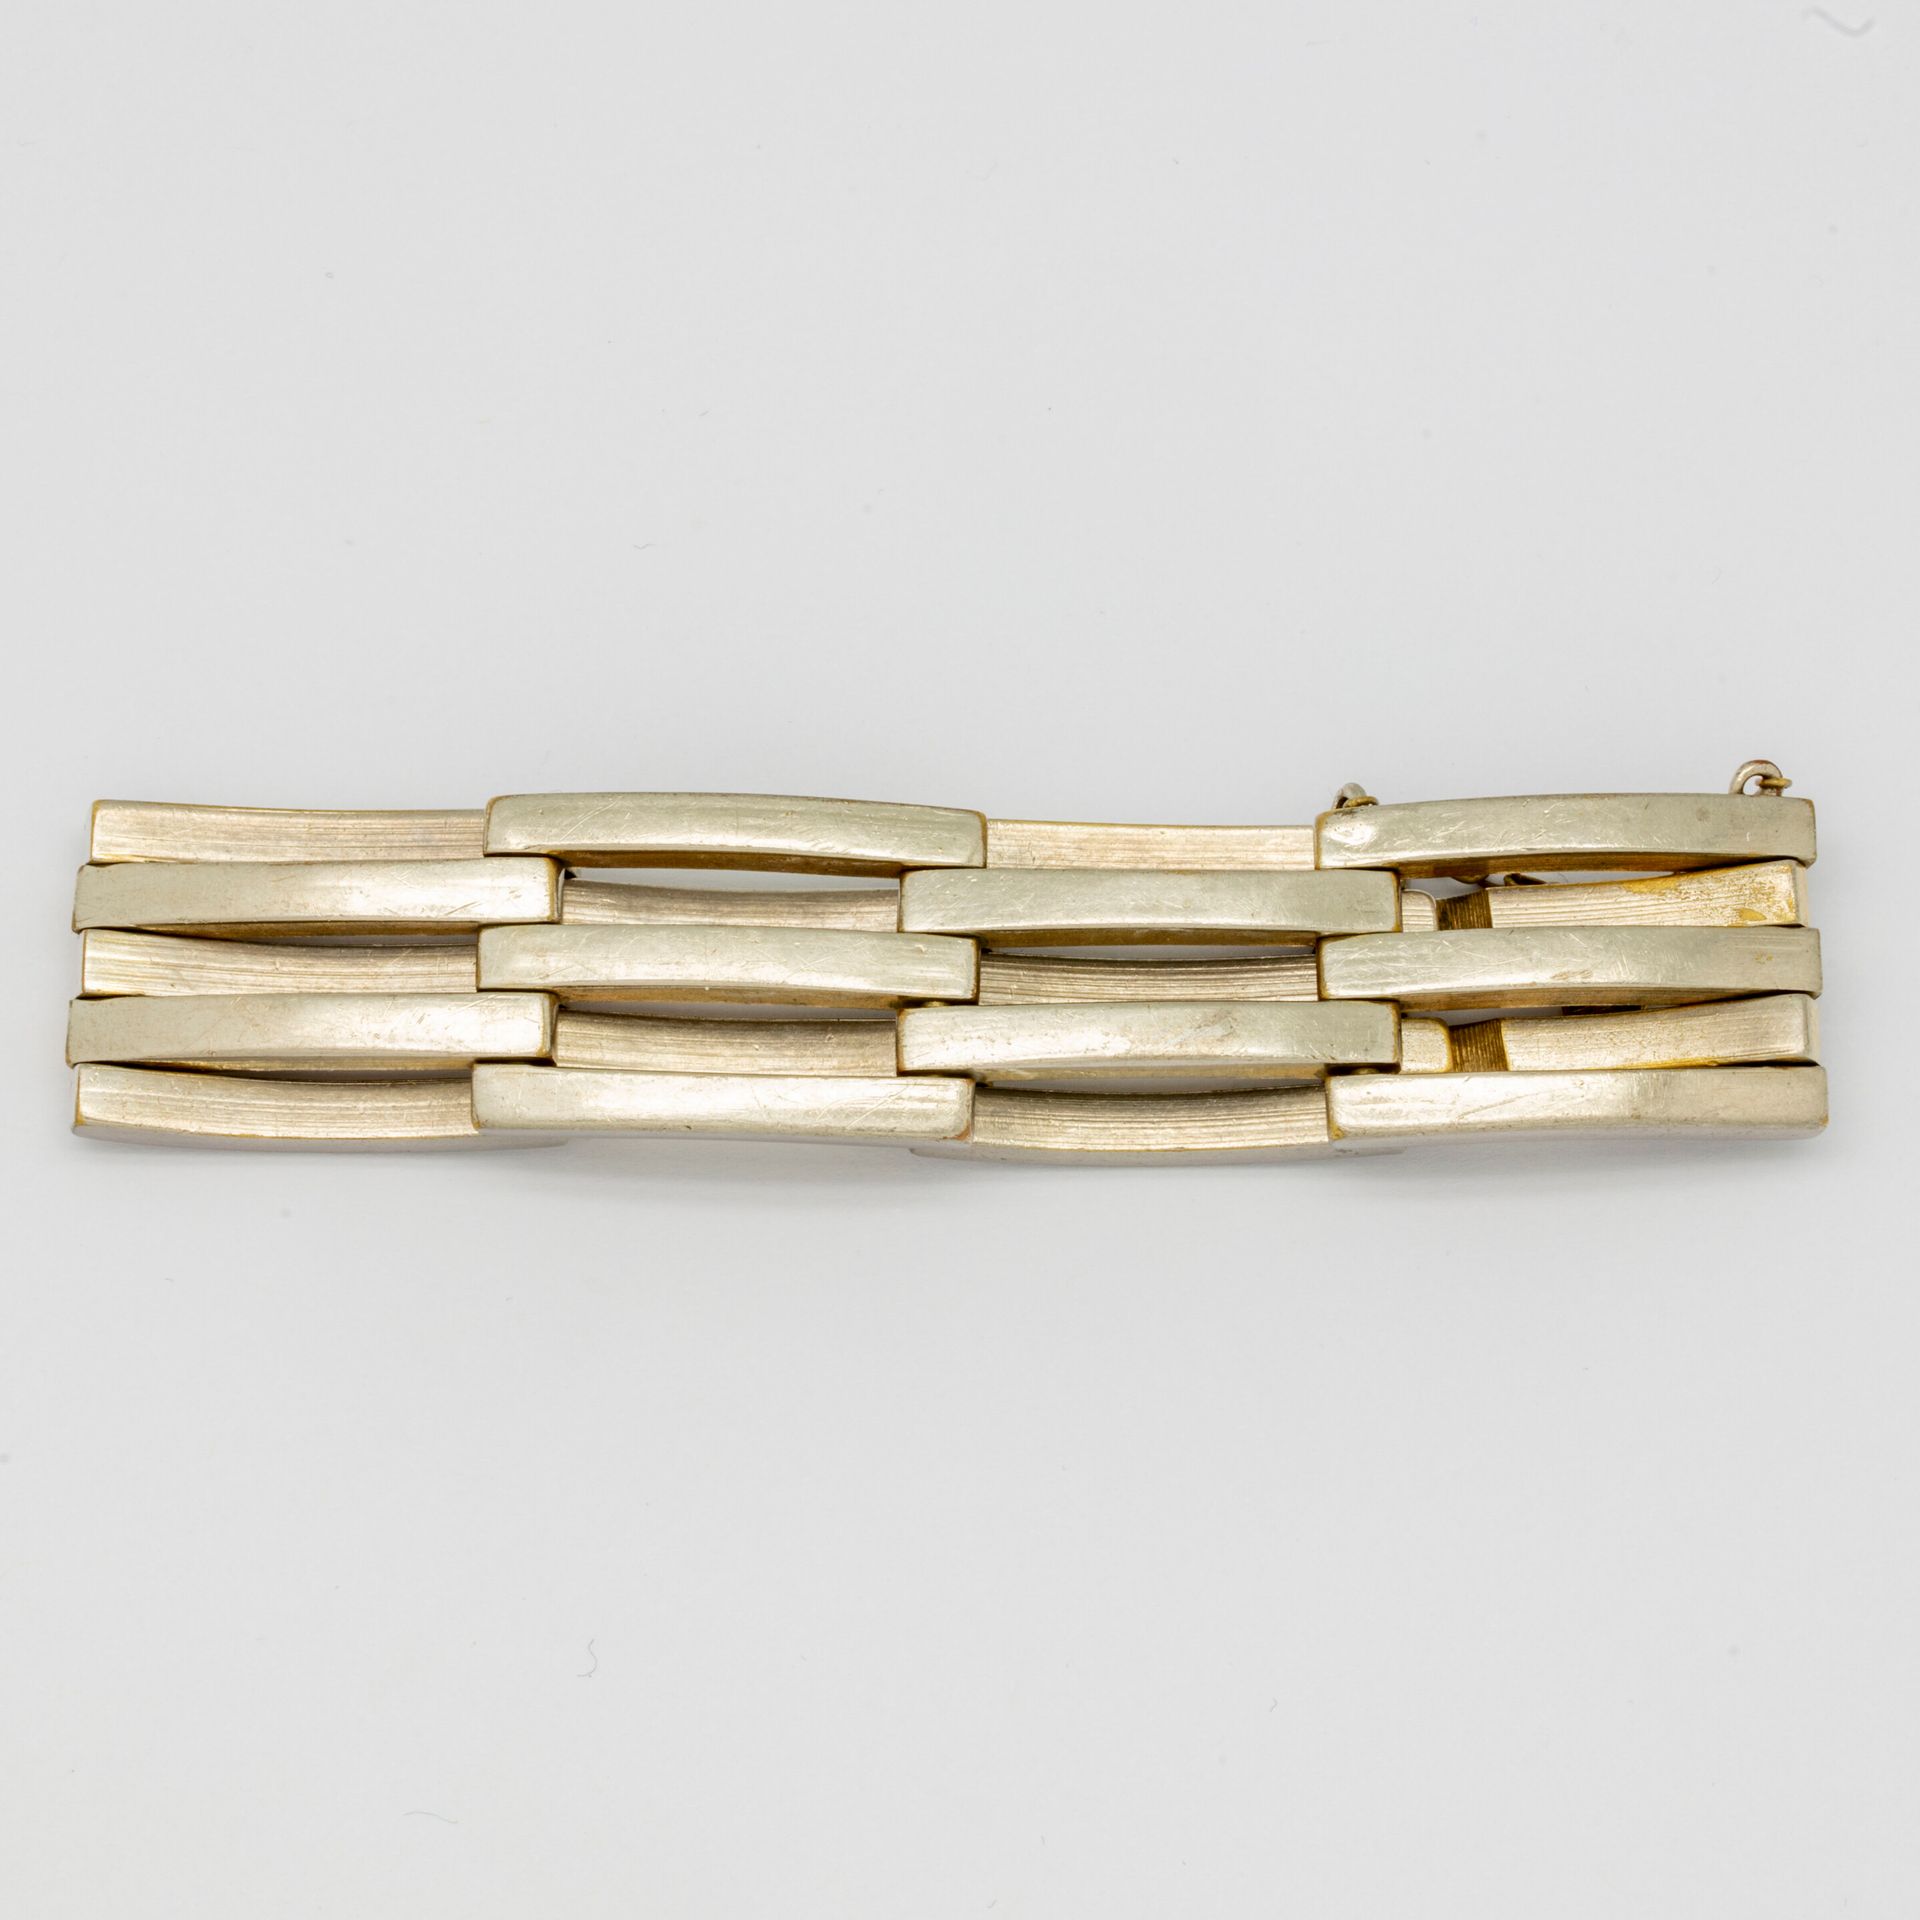 Null Armband mit gegliederten Gliedern aus versilbertem Metall.

Art-Deco-Epoche